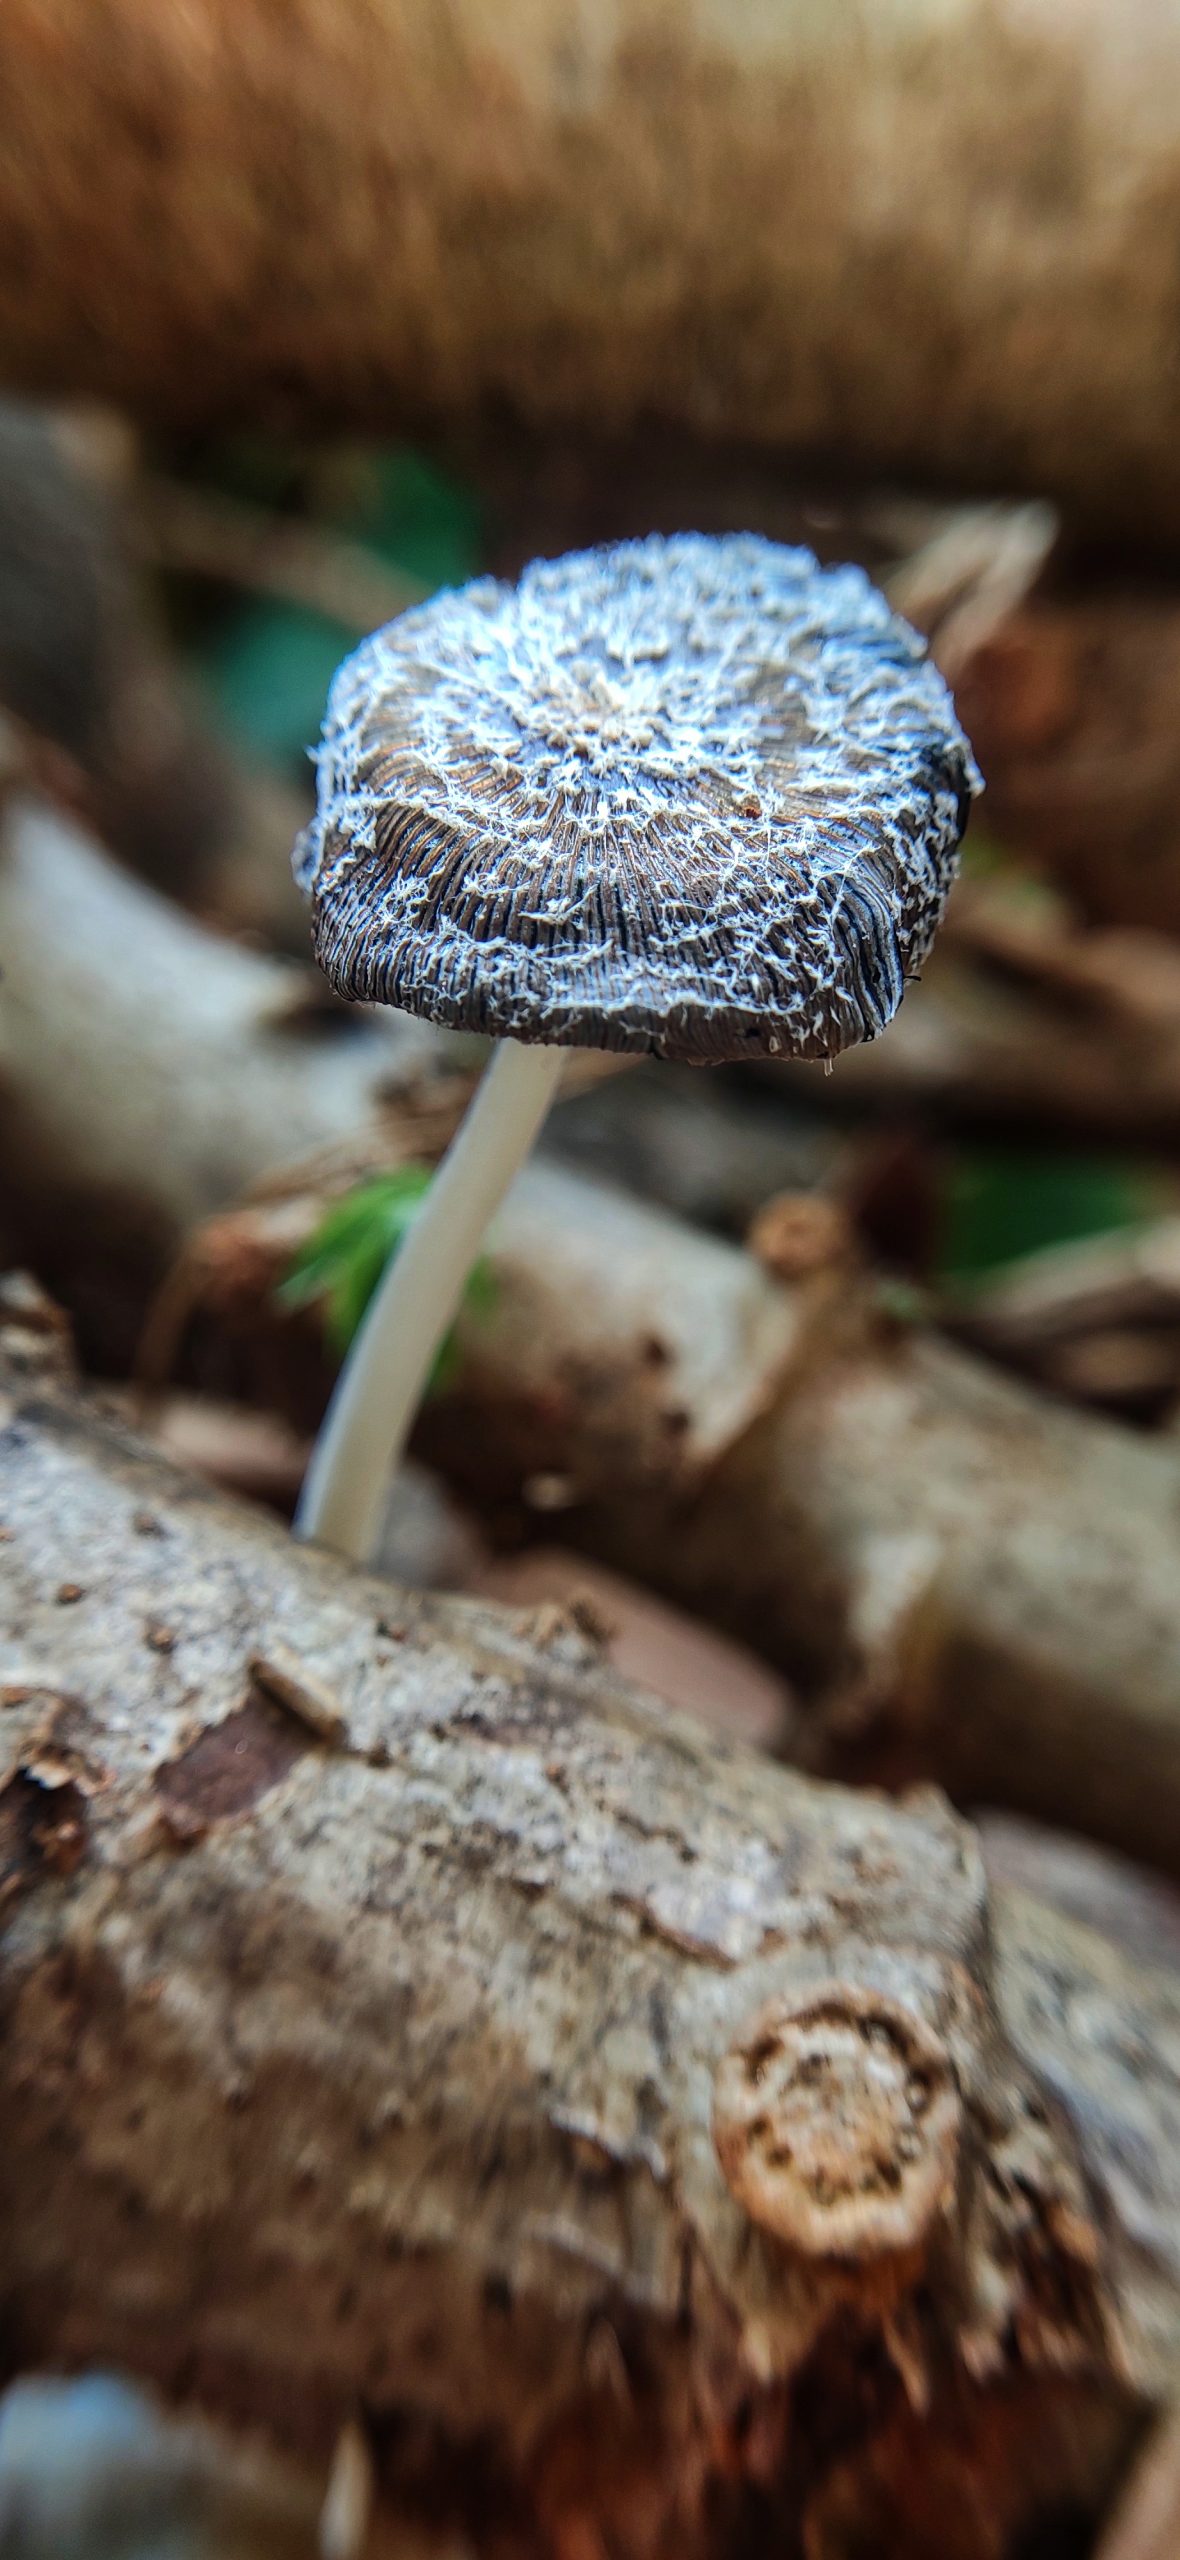 A mushroom plant